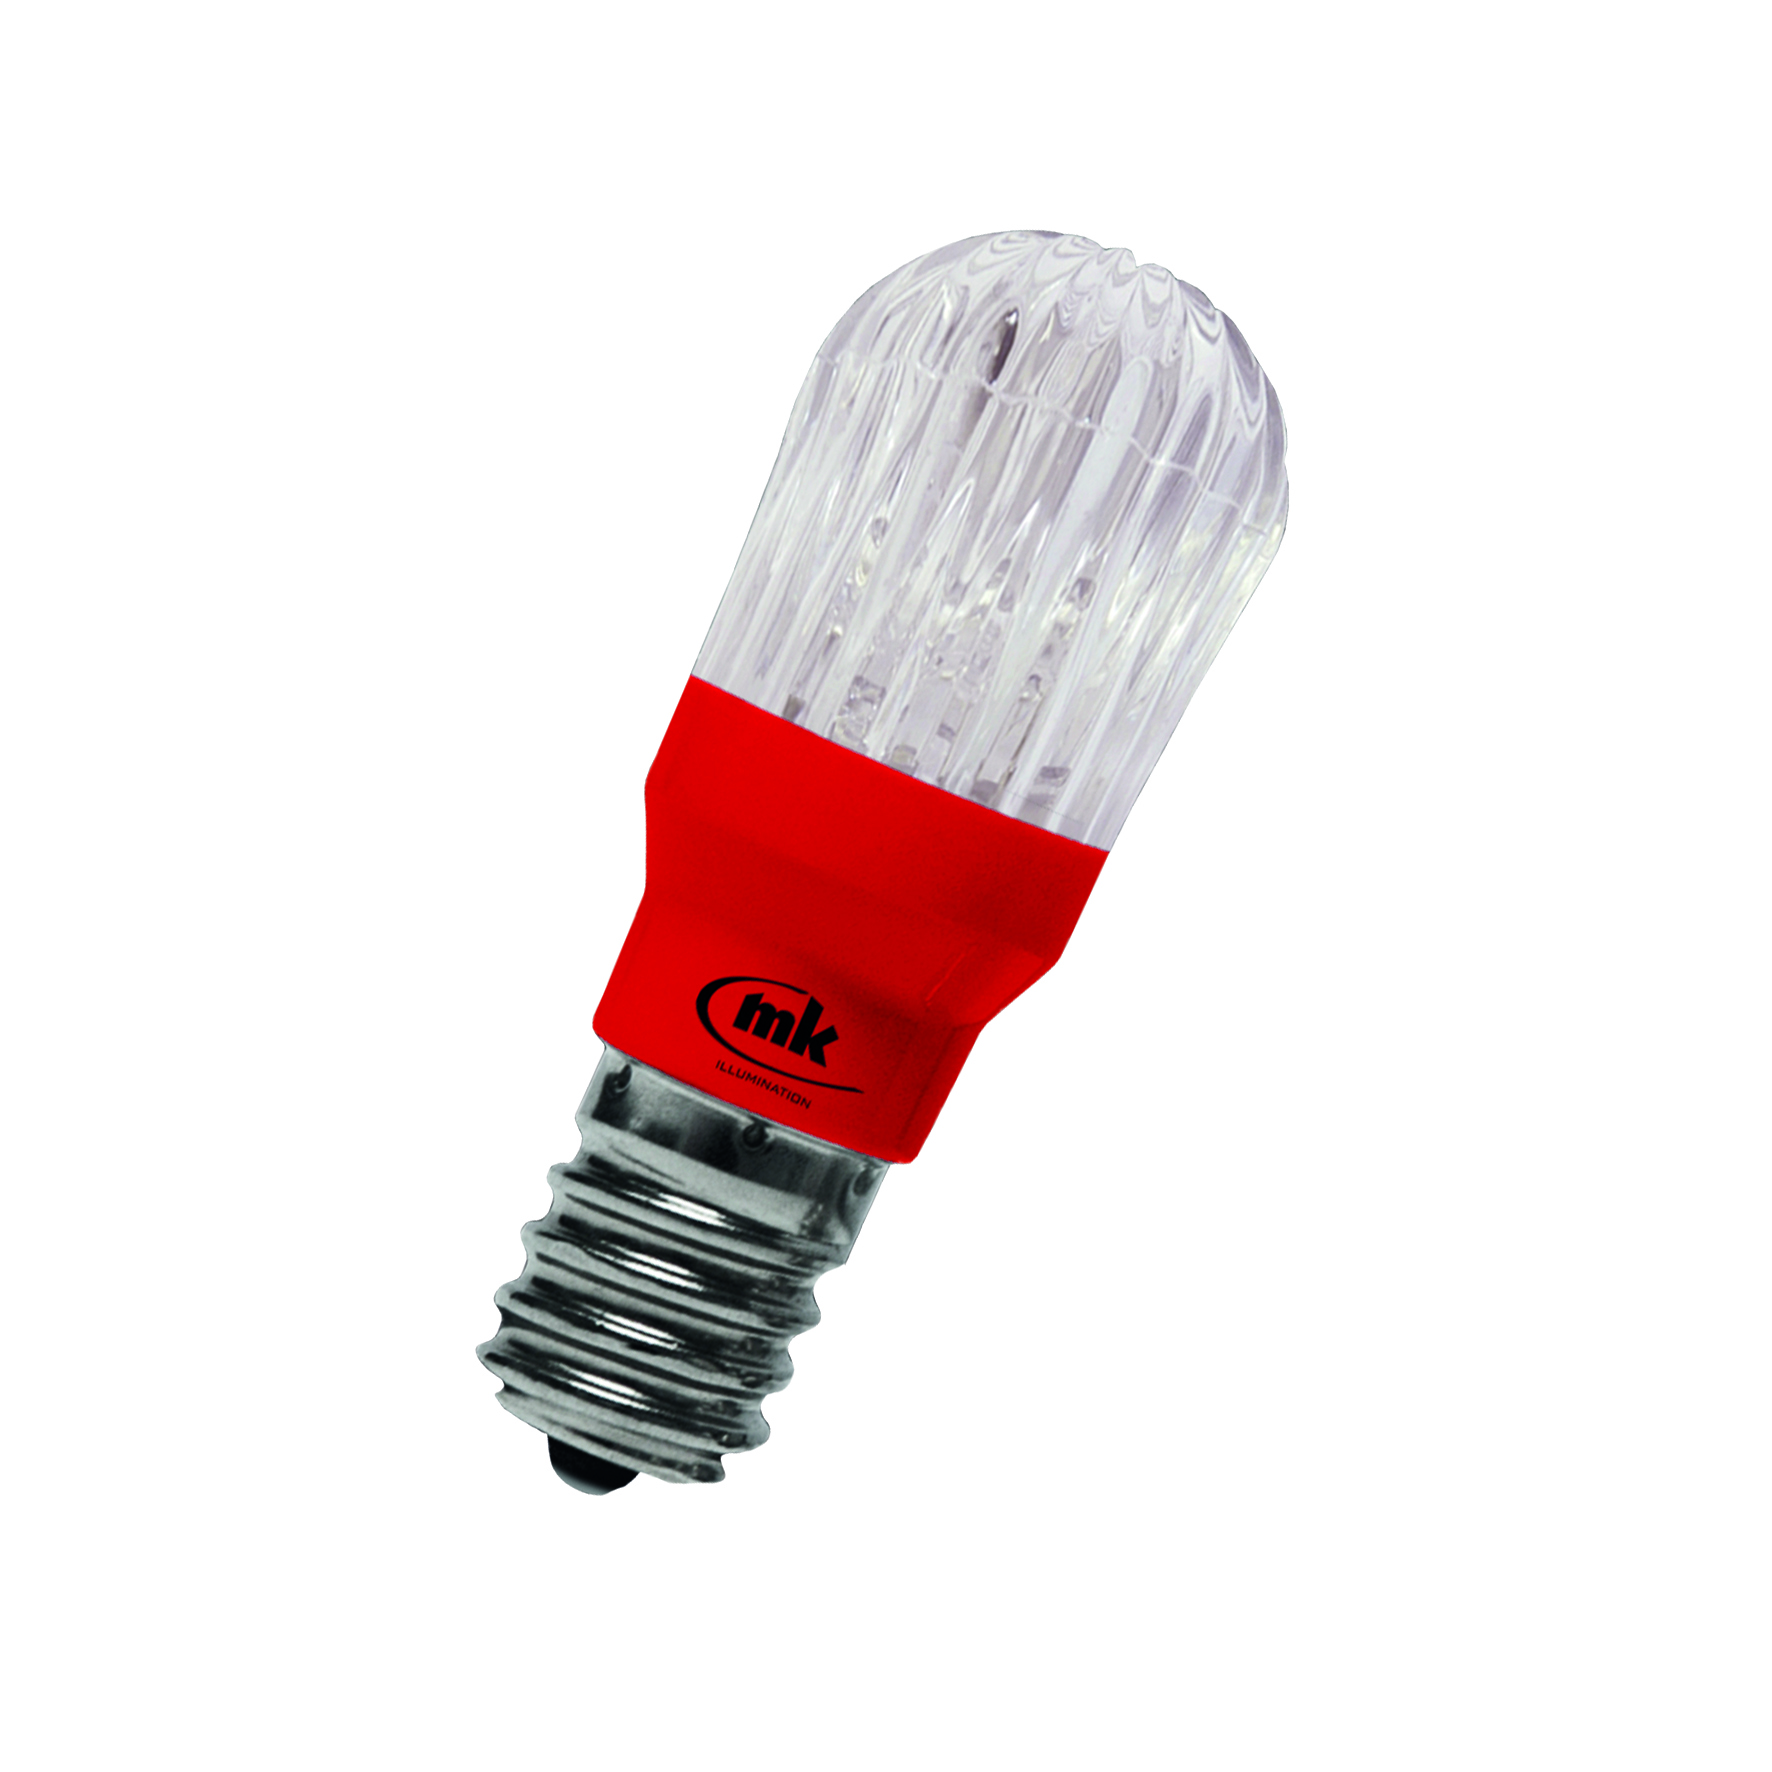 014-448 Prisma Bulb E14 12V 0.5W 6lm Red